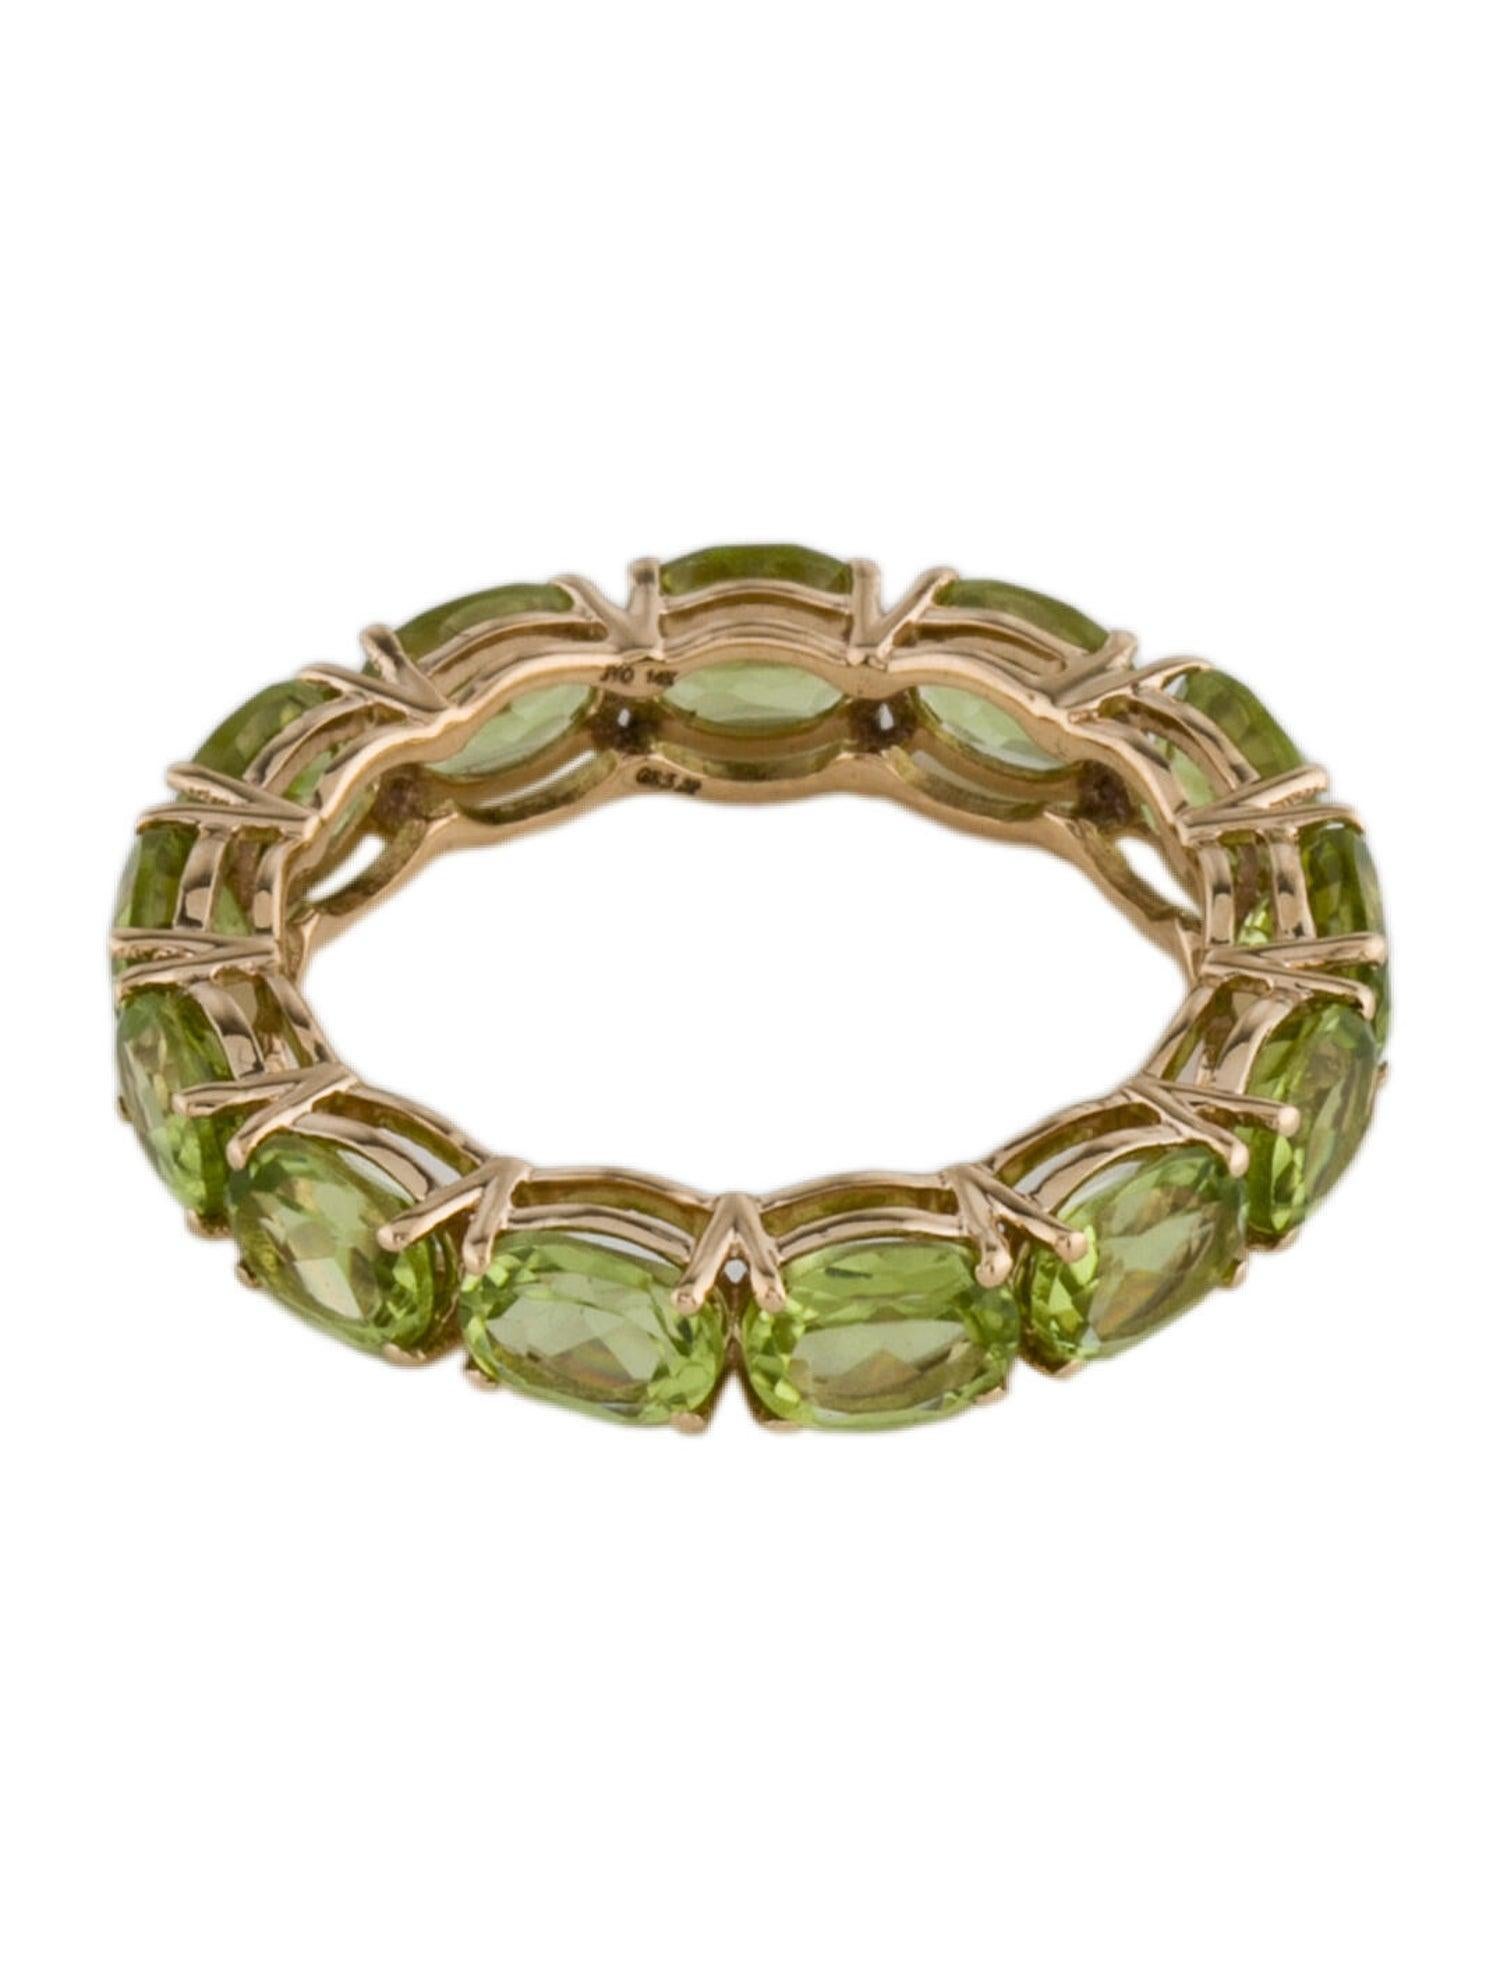 Erhöhen Sie Ihren Stil mit dem Harmony in Green Peridot Oval Ring von Jeweltique, einer bezaubernden Ode an die beruhigende Umarmung der Natur. Dieser exquisite, mit Präzision und Leidenschaft gefertigte Ring ist ein Beweis für das Engagement